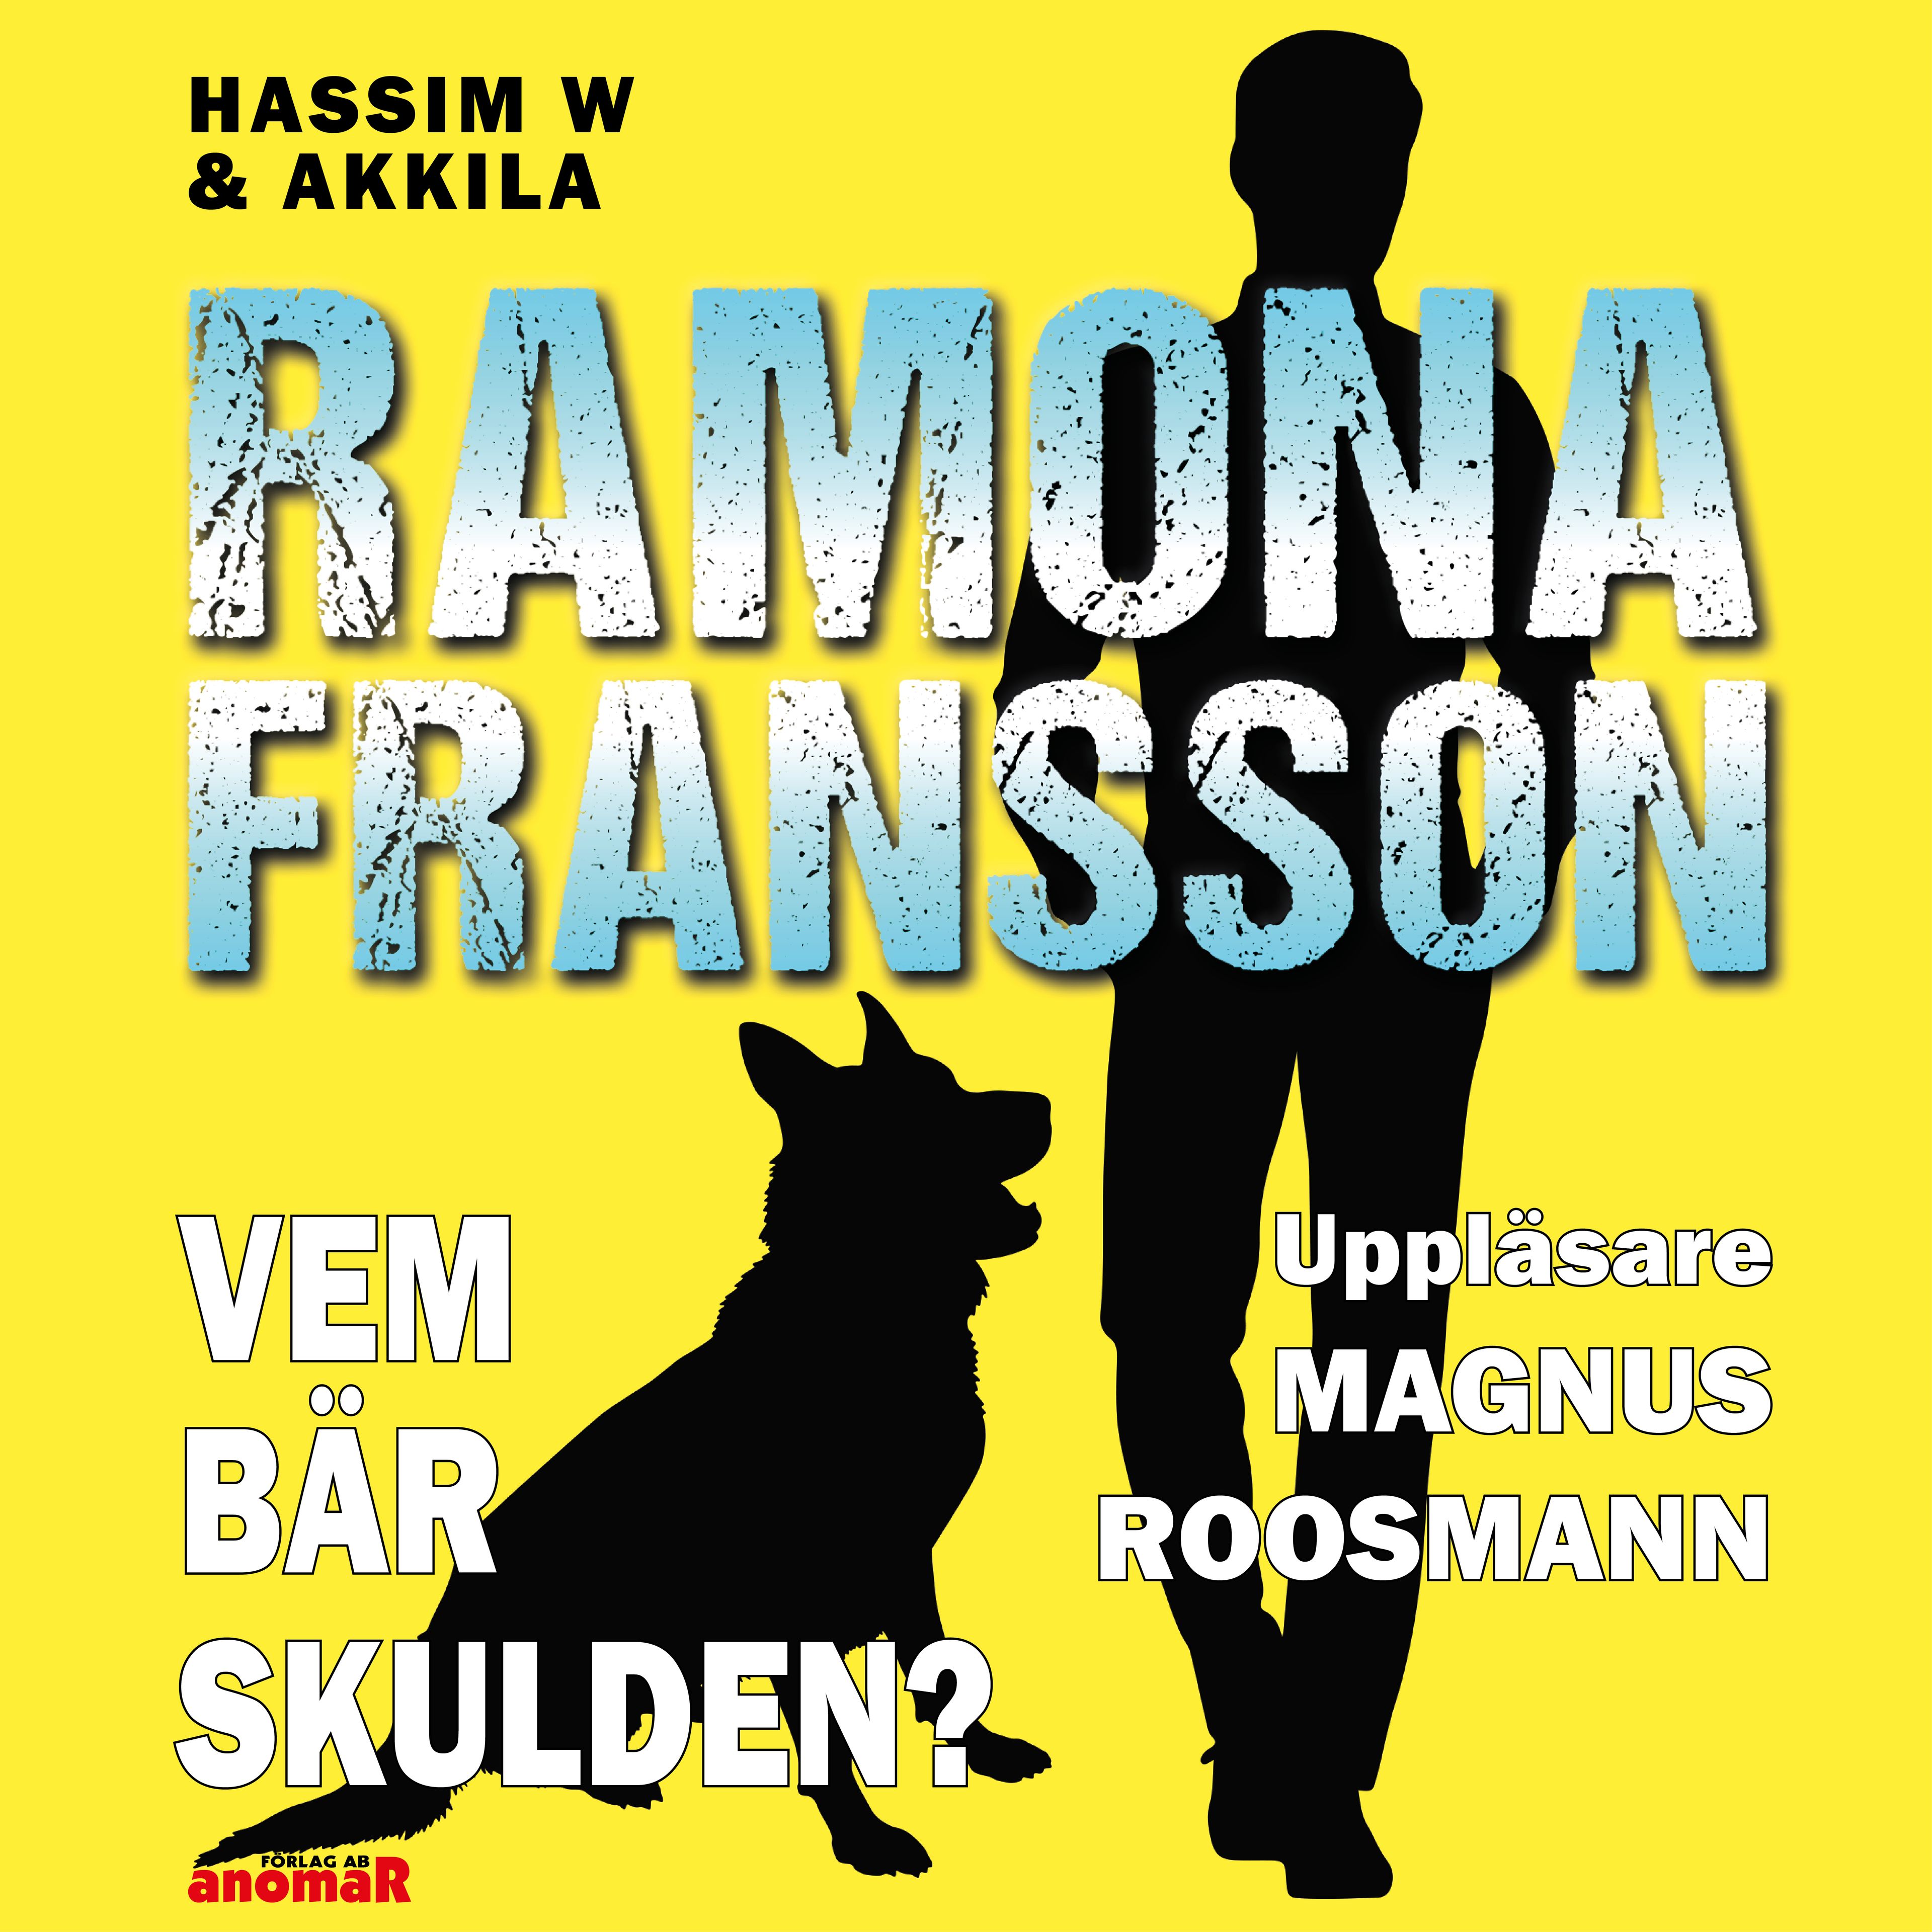 HW & Akkila, Vem bär skulden?, audiobook by Ramona Fransson